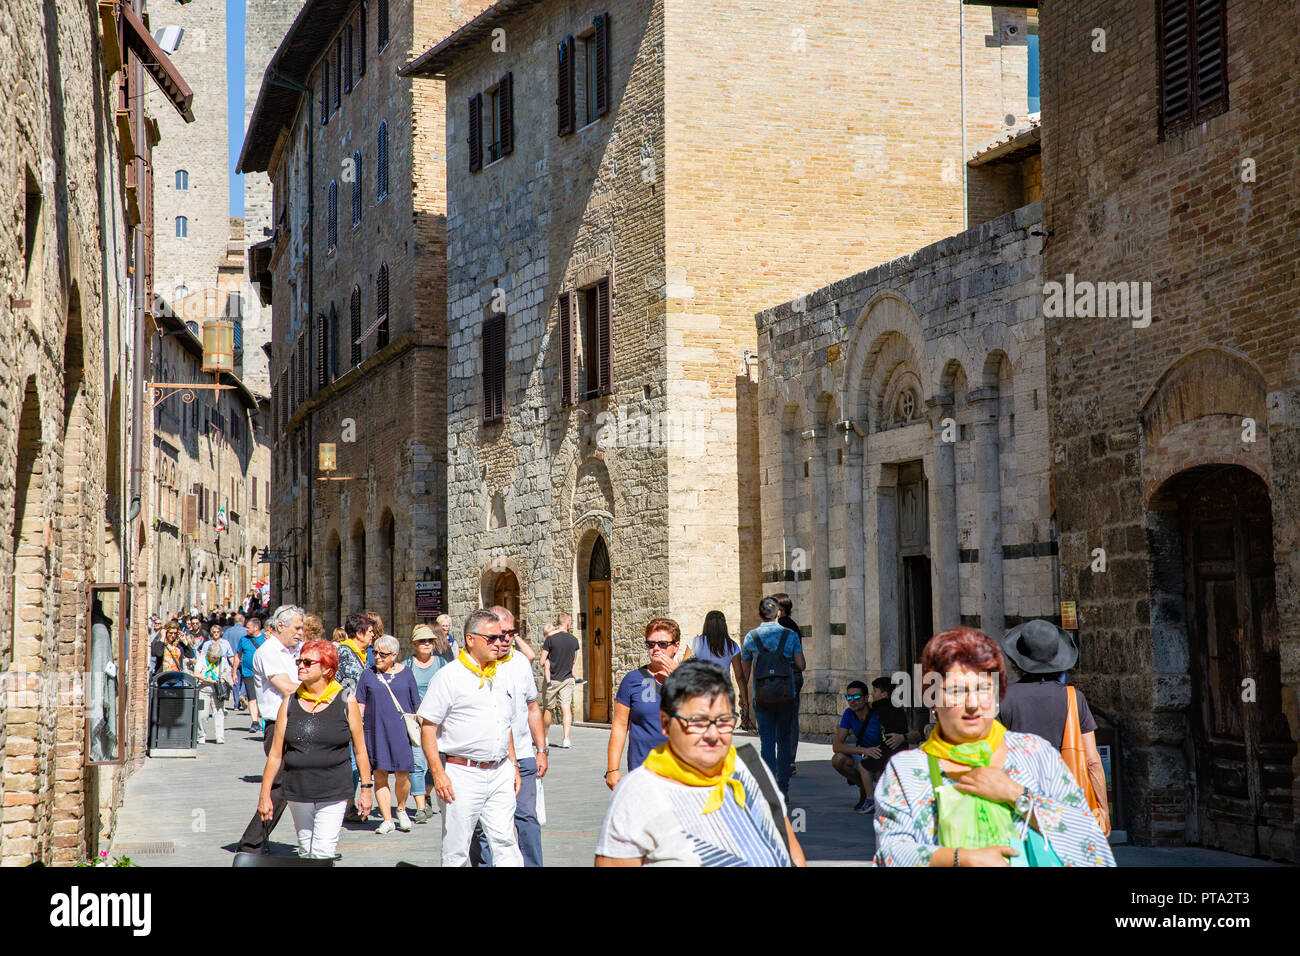 Gruppo di Tour tutti indossa foulard giallo camminato attraverso la storica cittadina collinare di San Gimignano in Toscana, a sud-ovest di Firenze,l'Italia,l'Europa Foto Stock